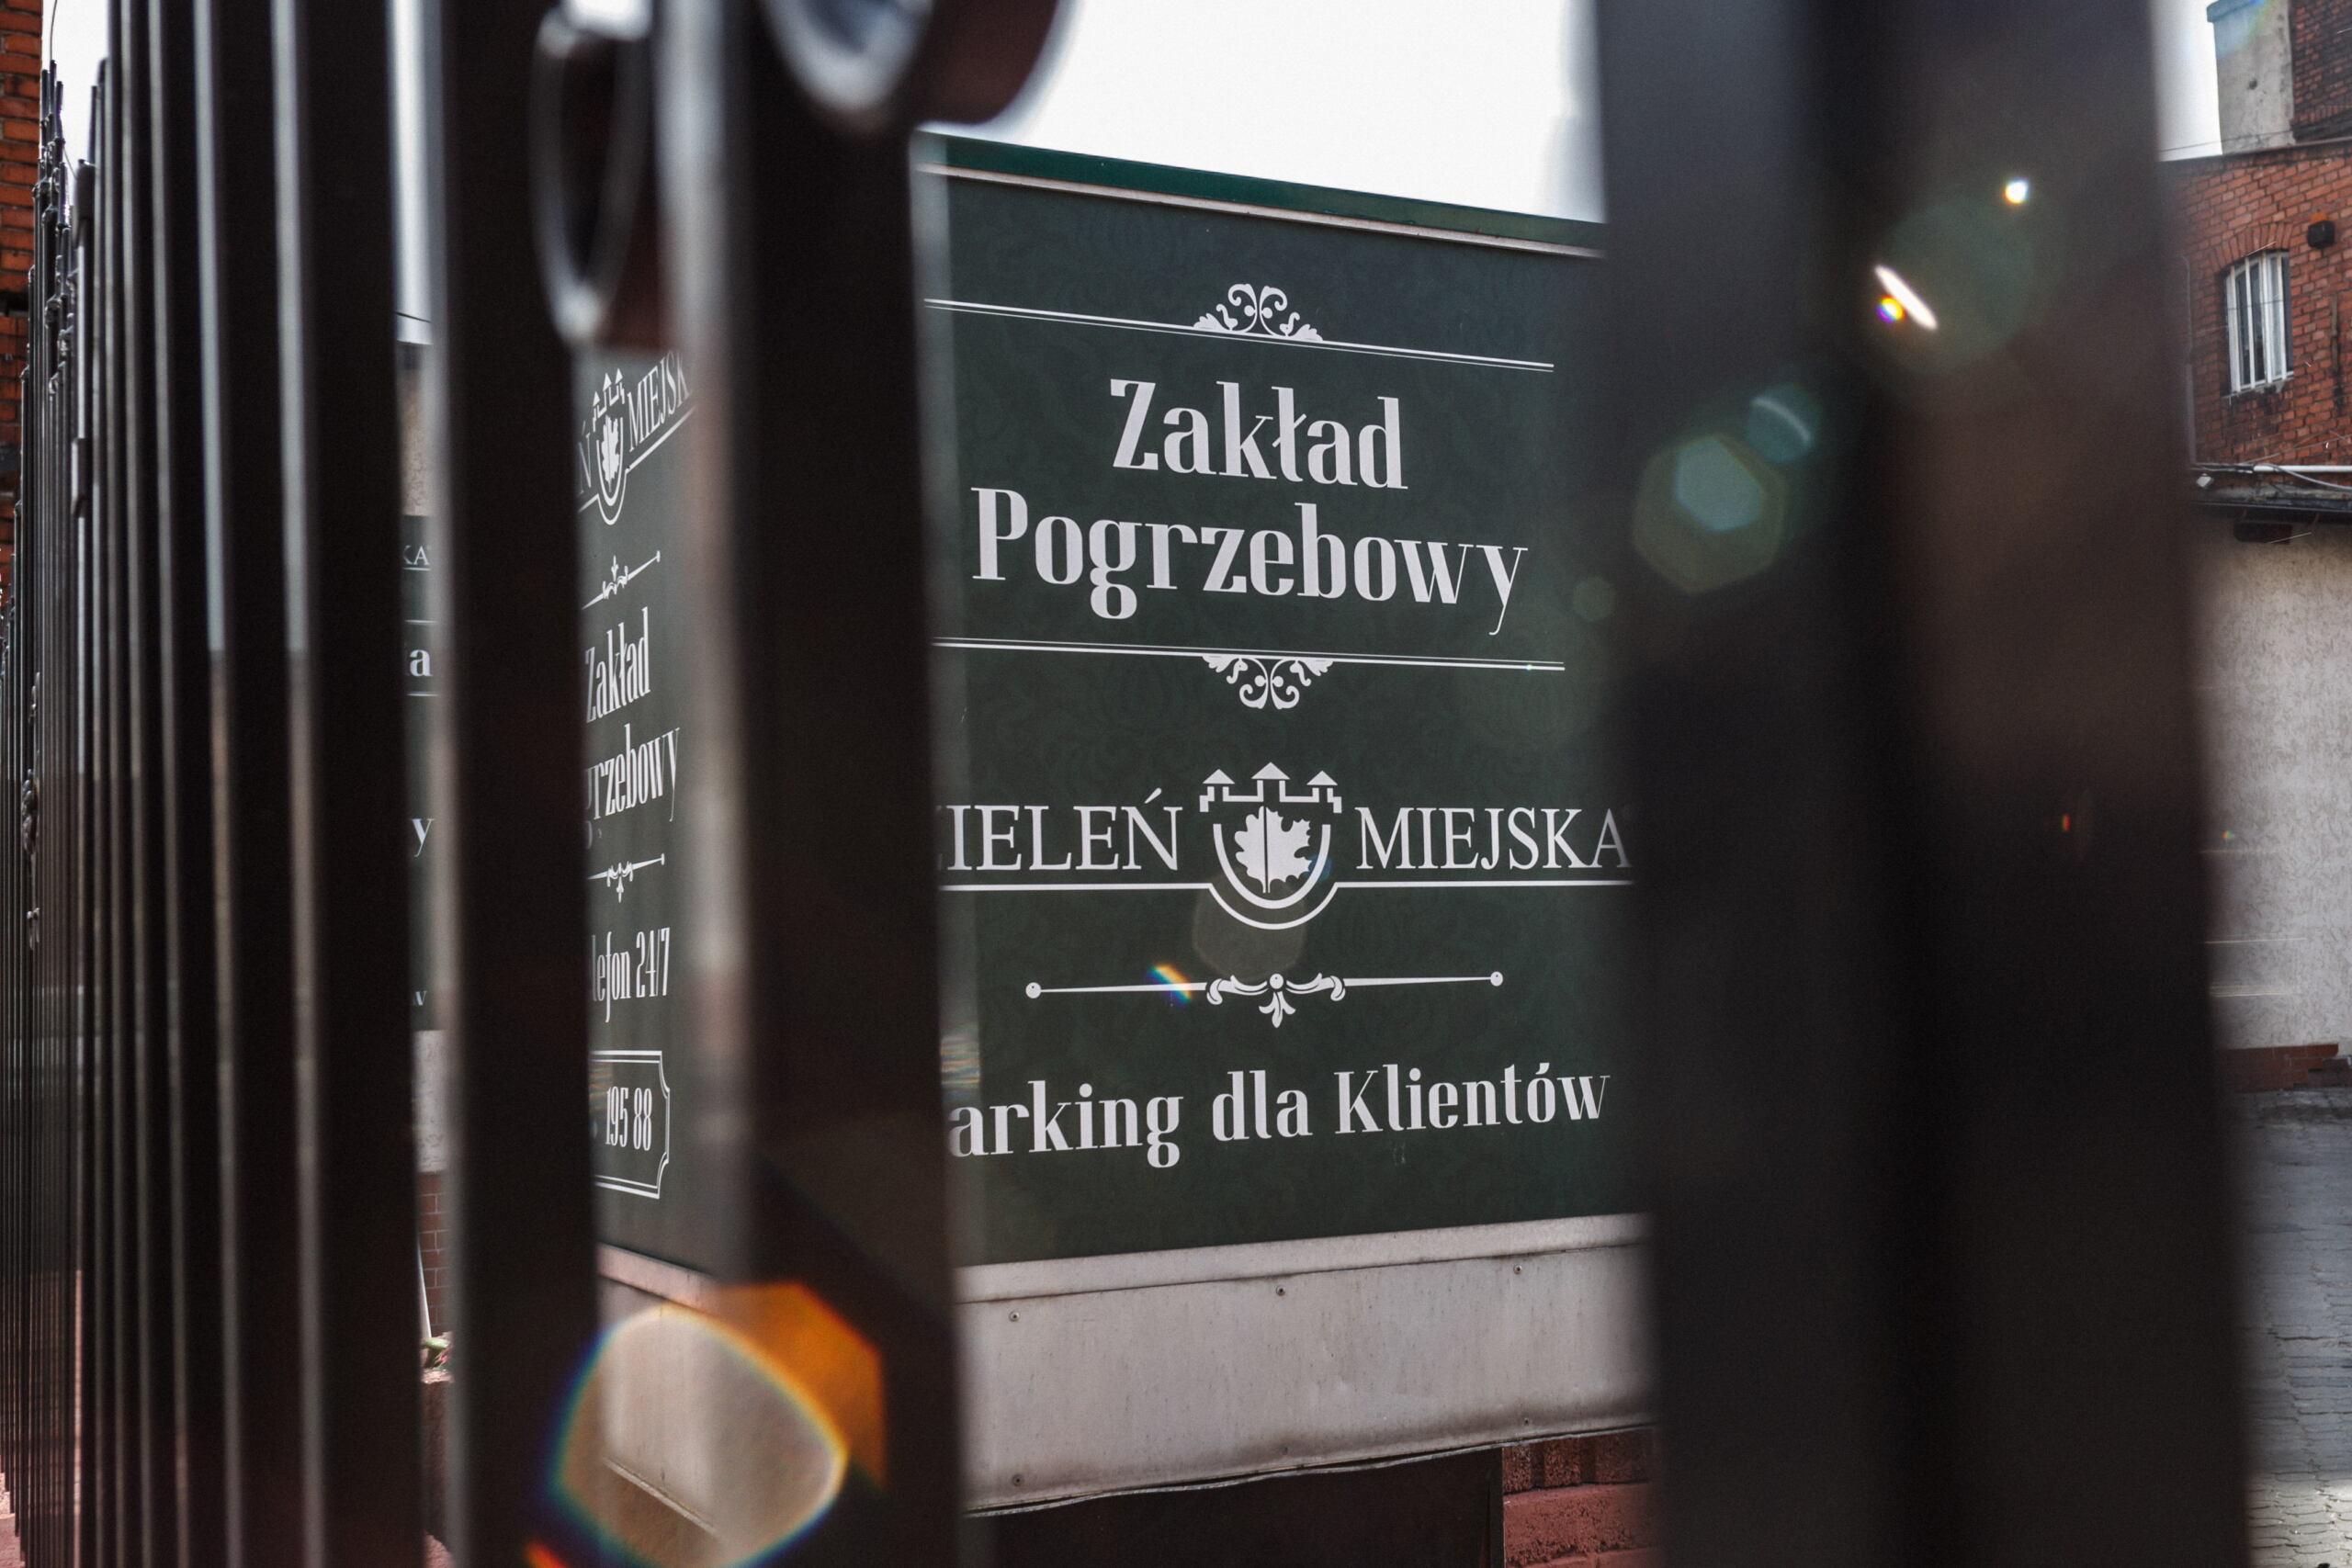 06.04.2021 Bydgoszcz. Zaklad pogrzebowy .
Fot. Roman Bosiacki / Agencja Gazeta